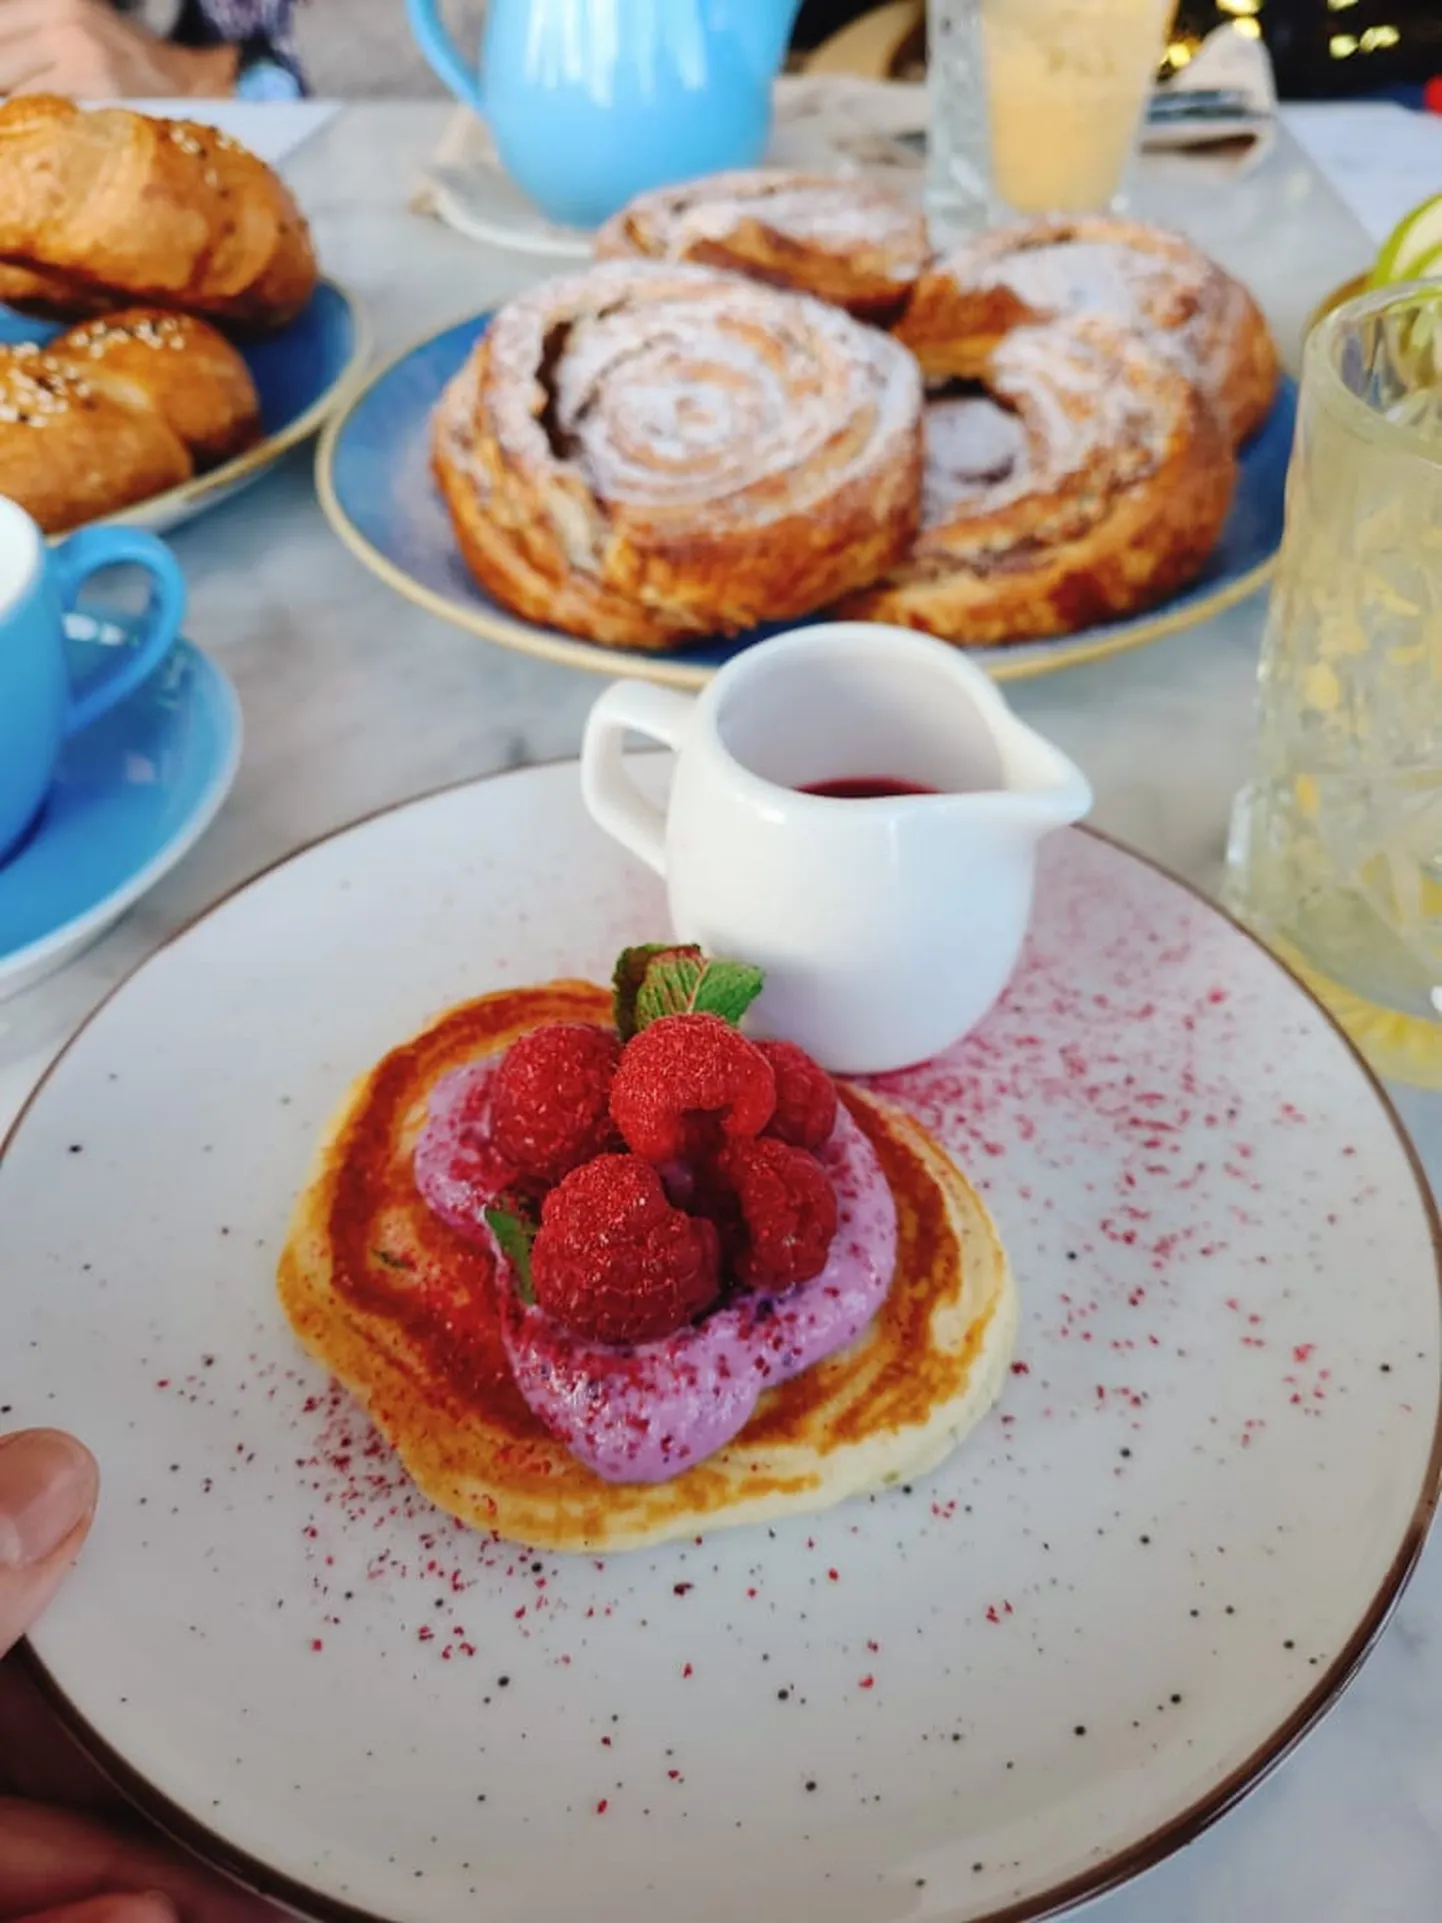 Умоотъедательные оладушки со свежими ягодами - изюминка бранчей кафе Komeet